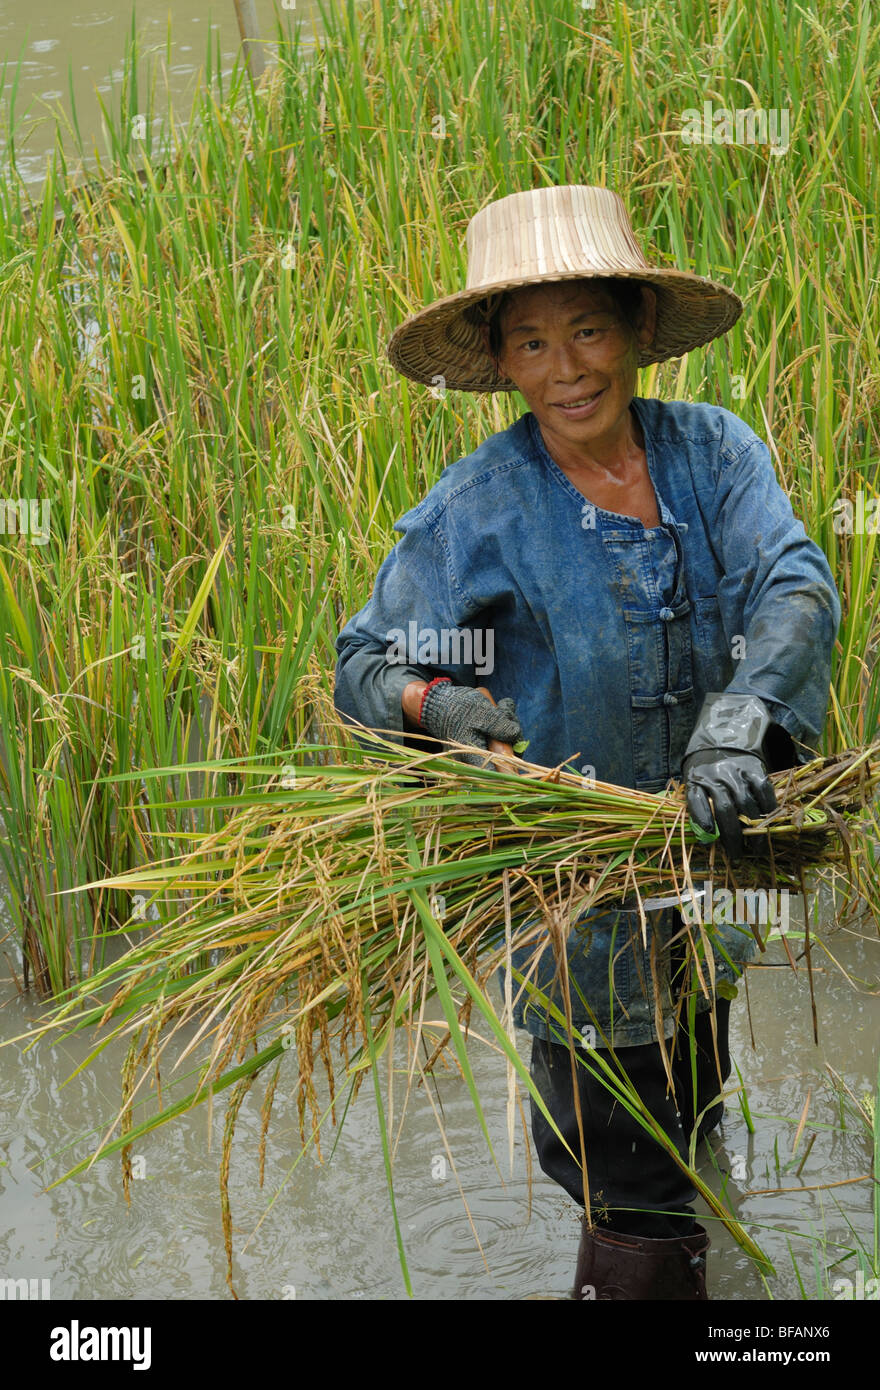 Chiang Mai la récolte de riz rizières rizières Thaïlande Asie female farmer Banque D'Images